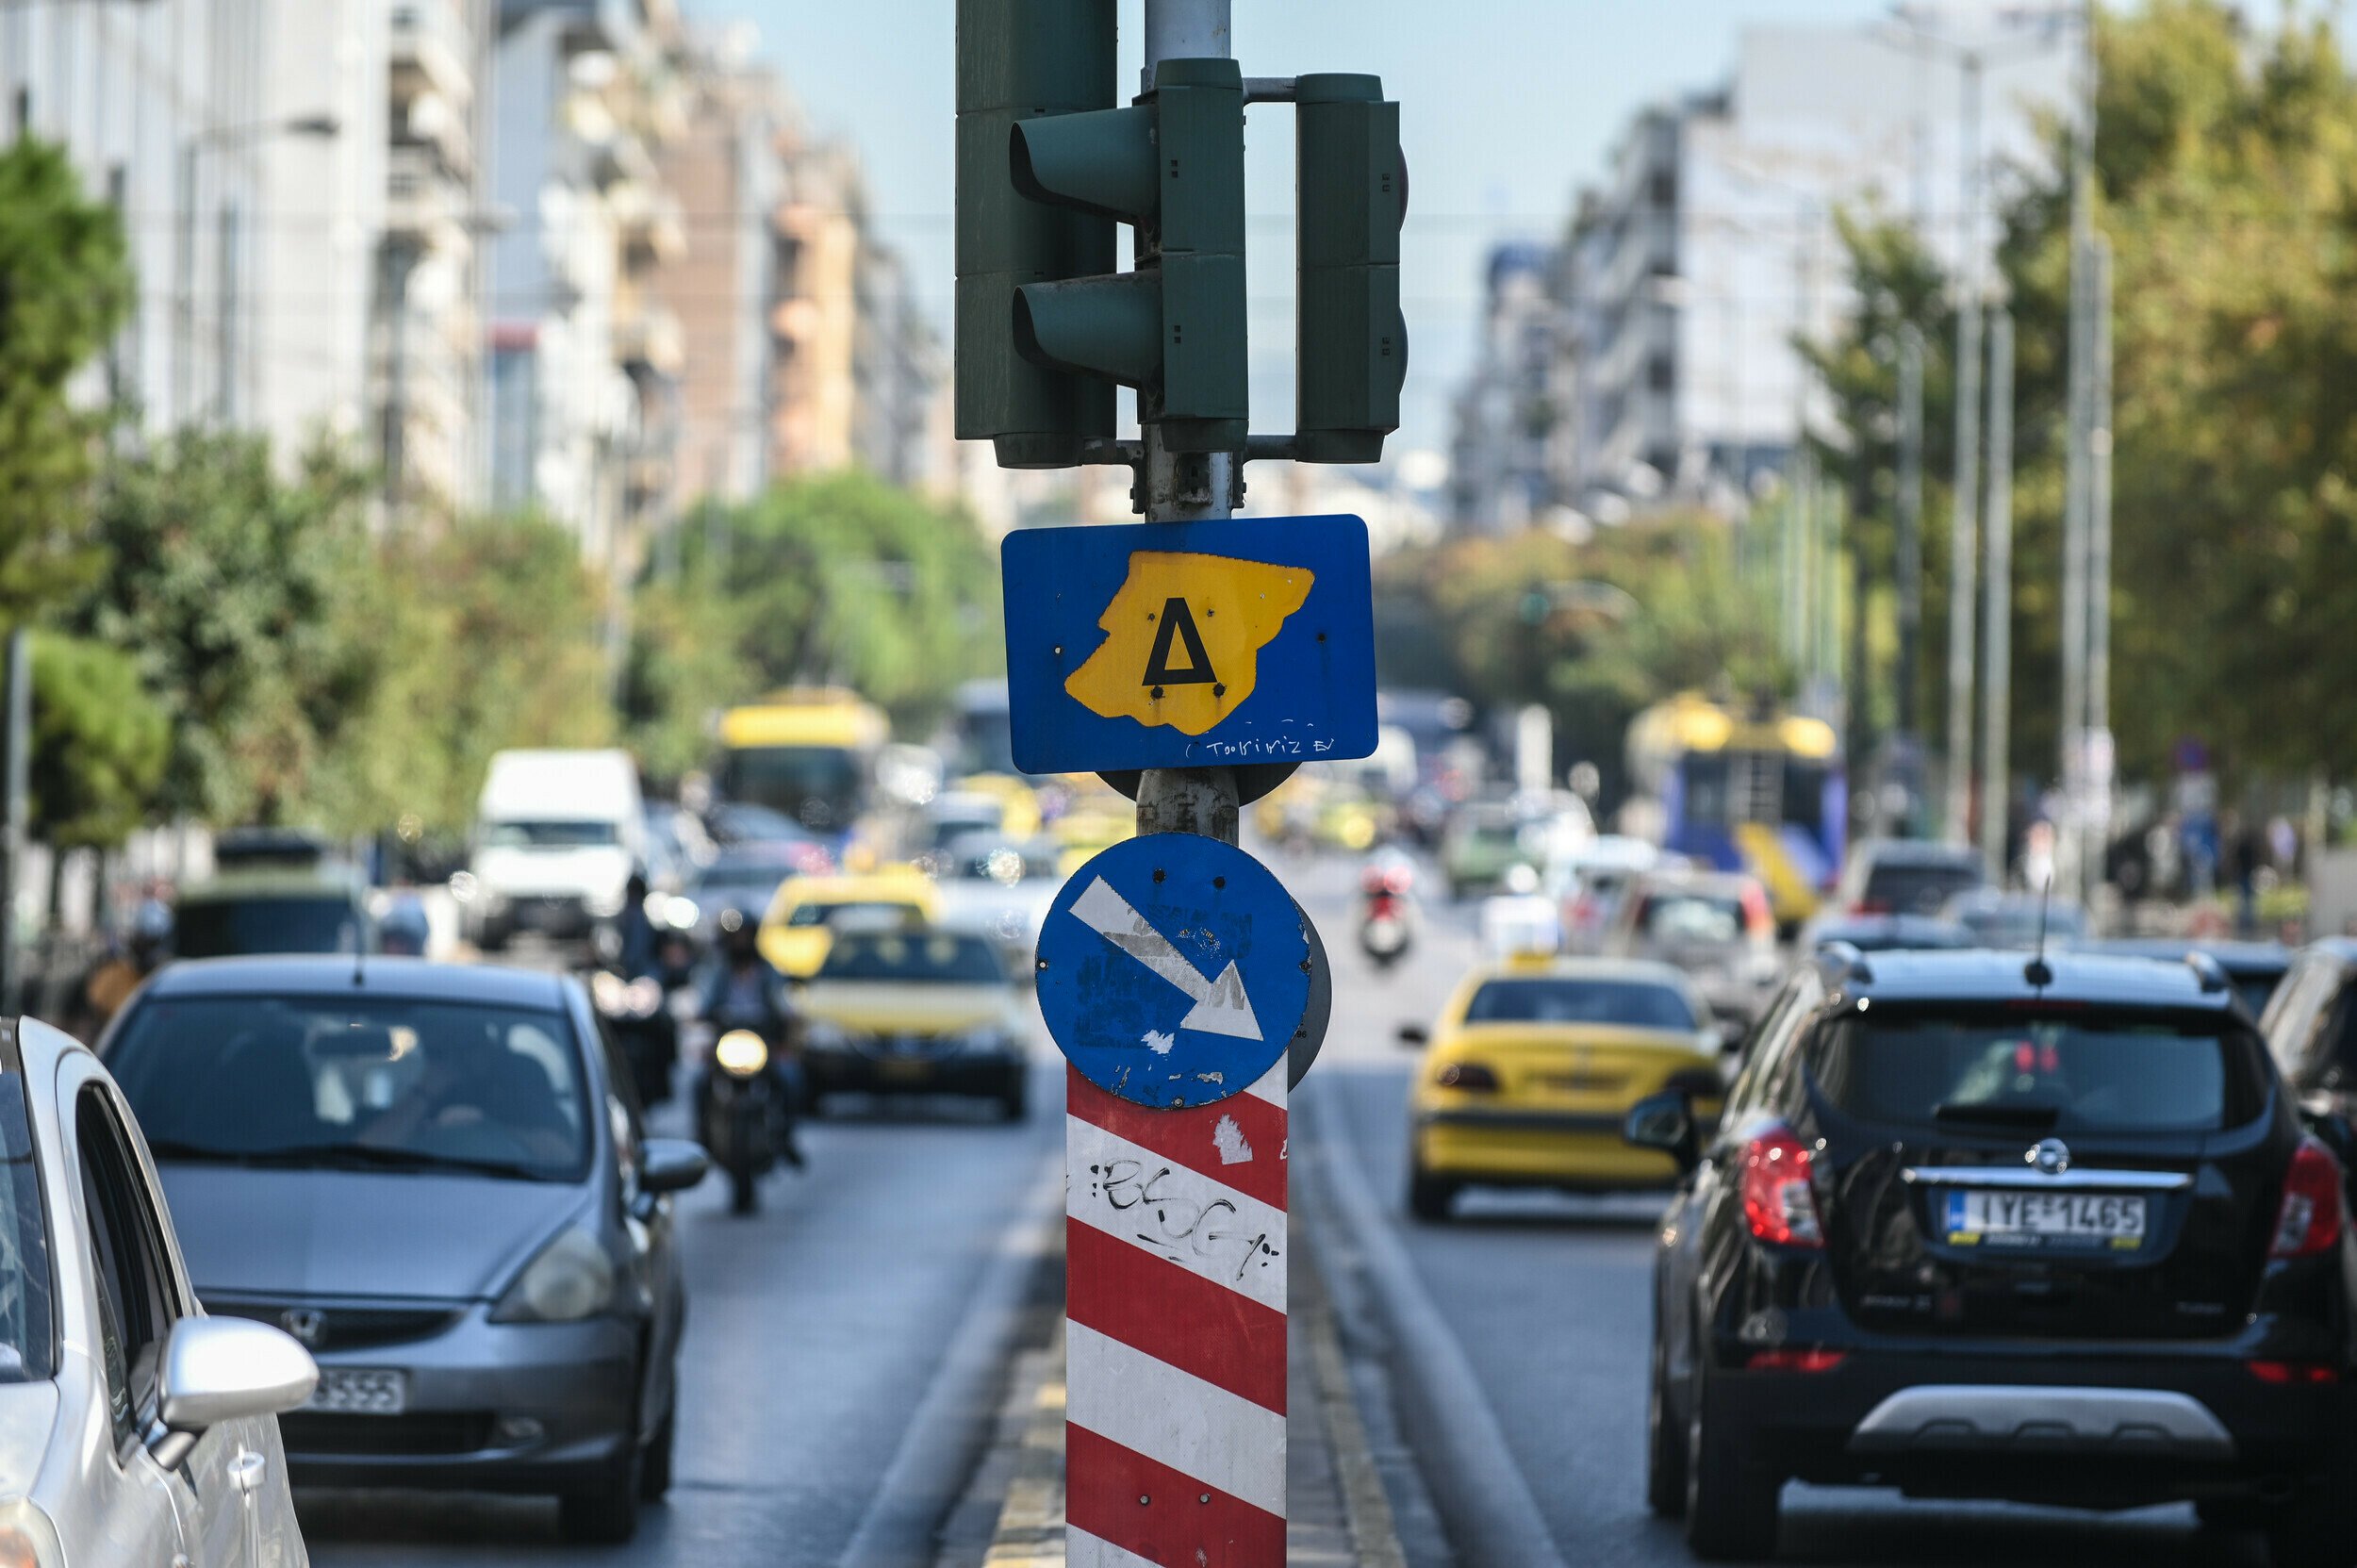 Δακτύλιος: Σε ποιους δρόμους θα ισχύει - Ποιοι εξαιρούνται - Βήμα προς βήμα η έκδοση άδειας κυκλοφορίας